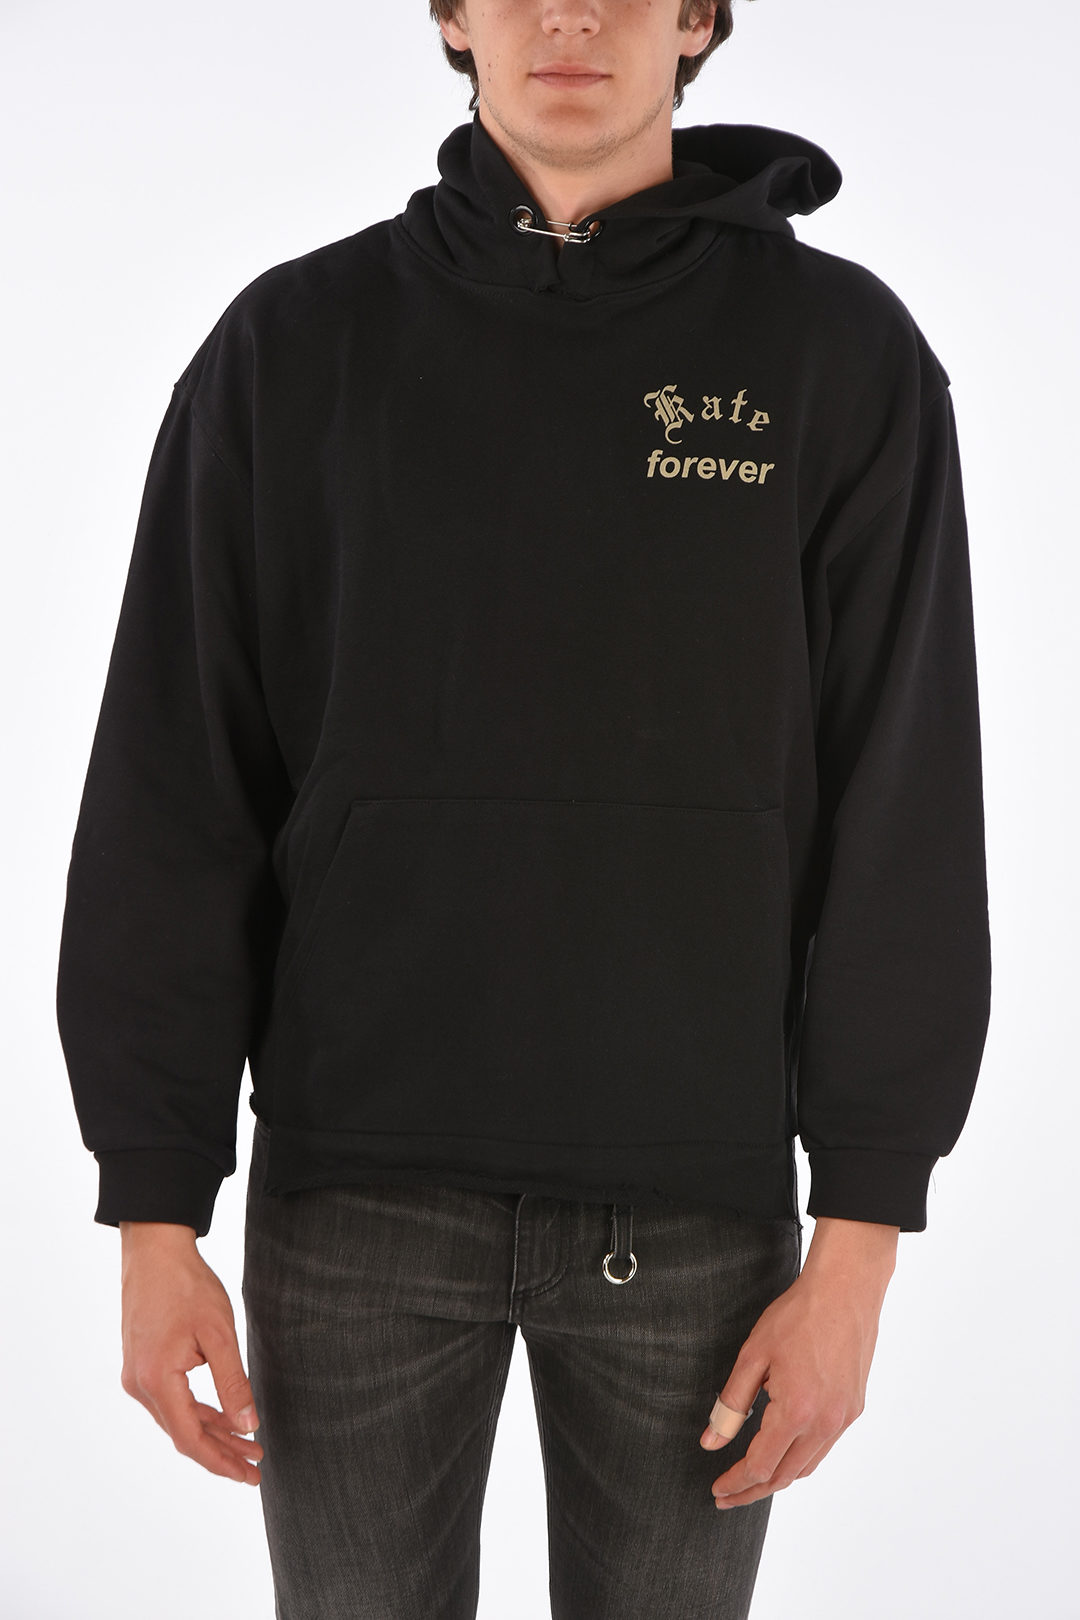 Mr Completely printed KATE FOREVER hoodie sweatshirt men - Glamood